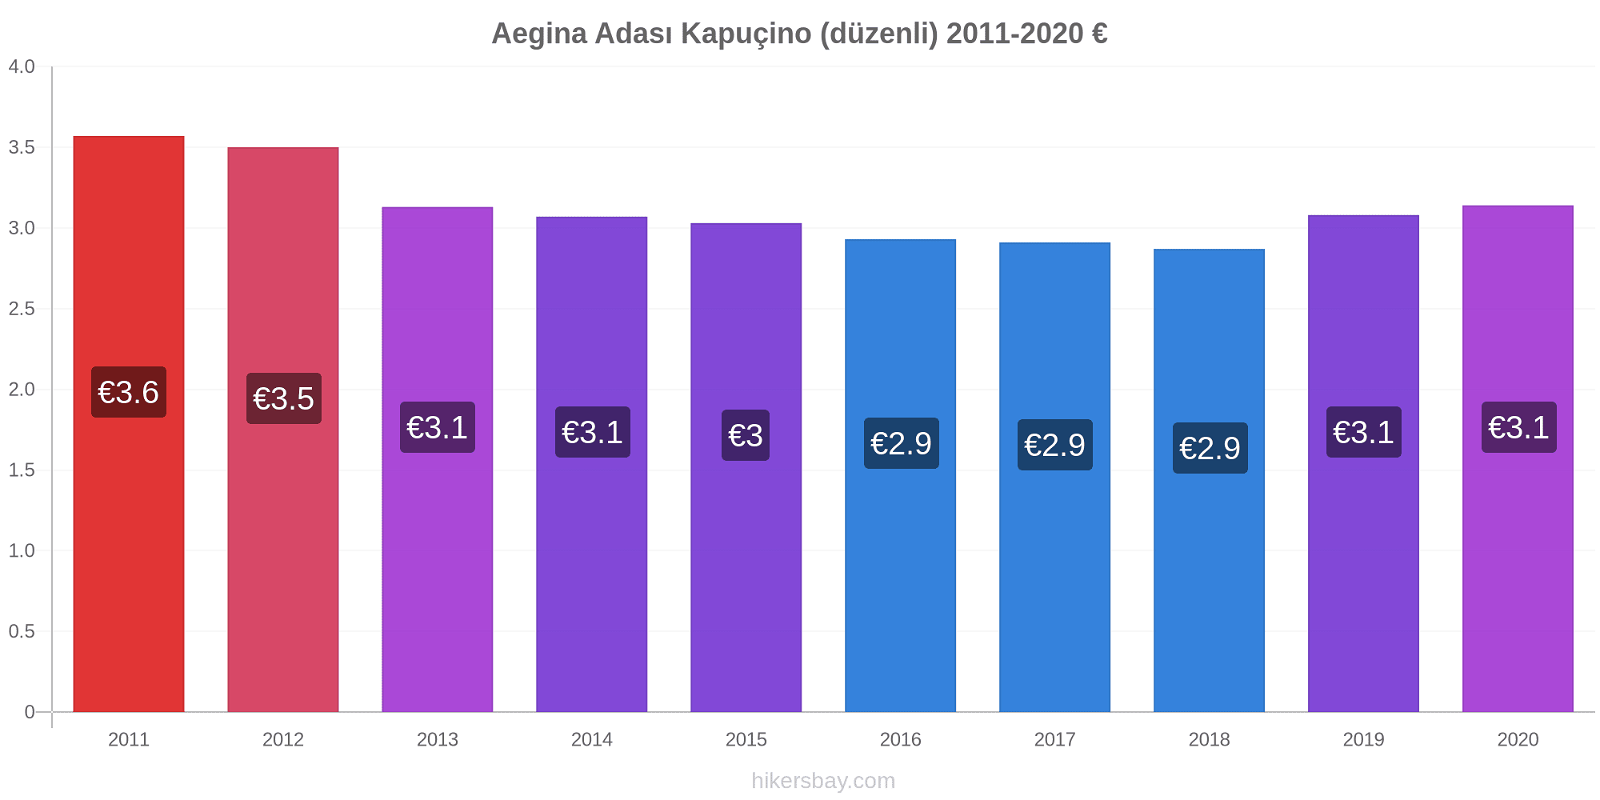 Aegina Adası fiyat değişiklikleri Kapuçino (düzenli) hikersbay.com